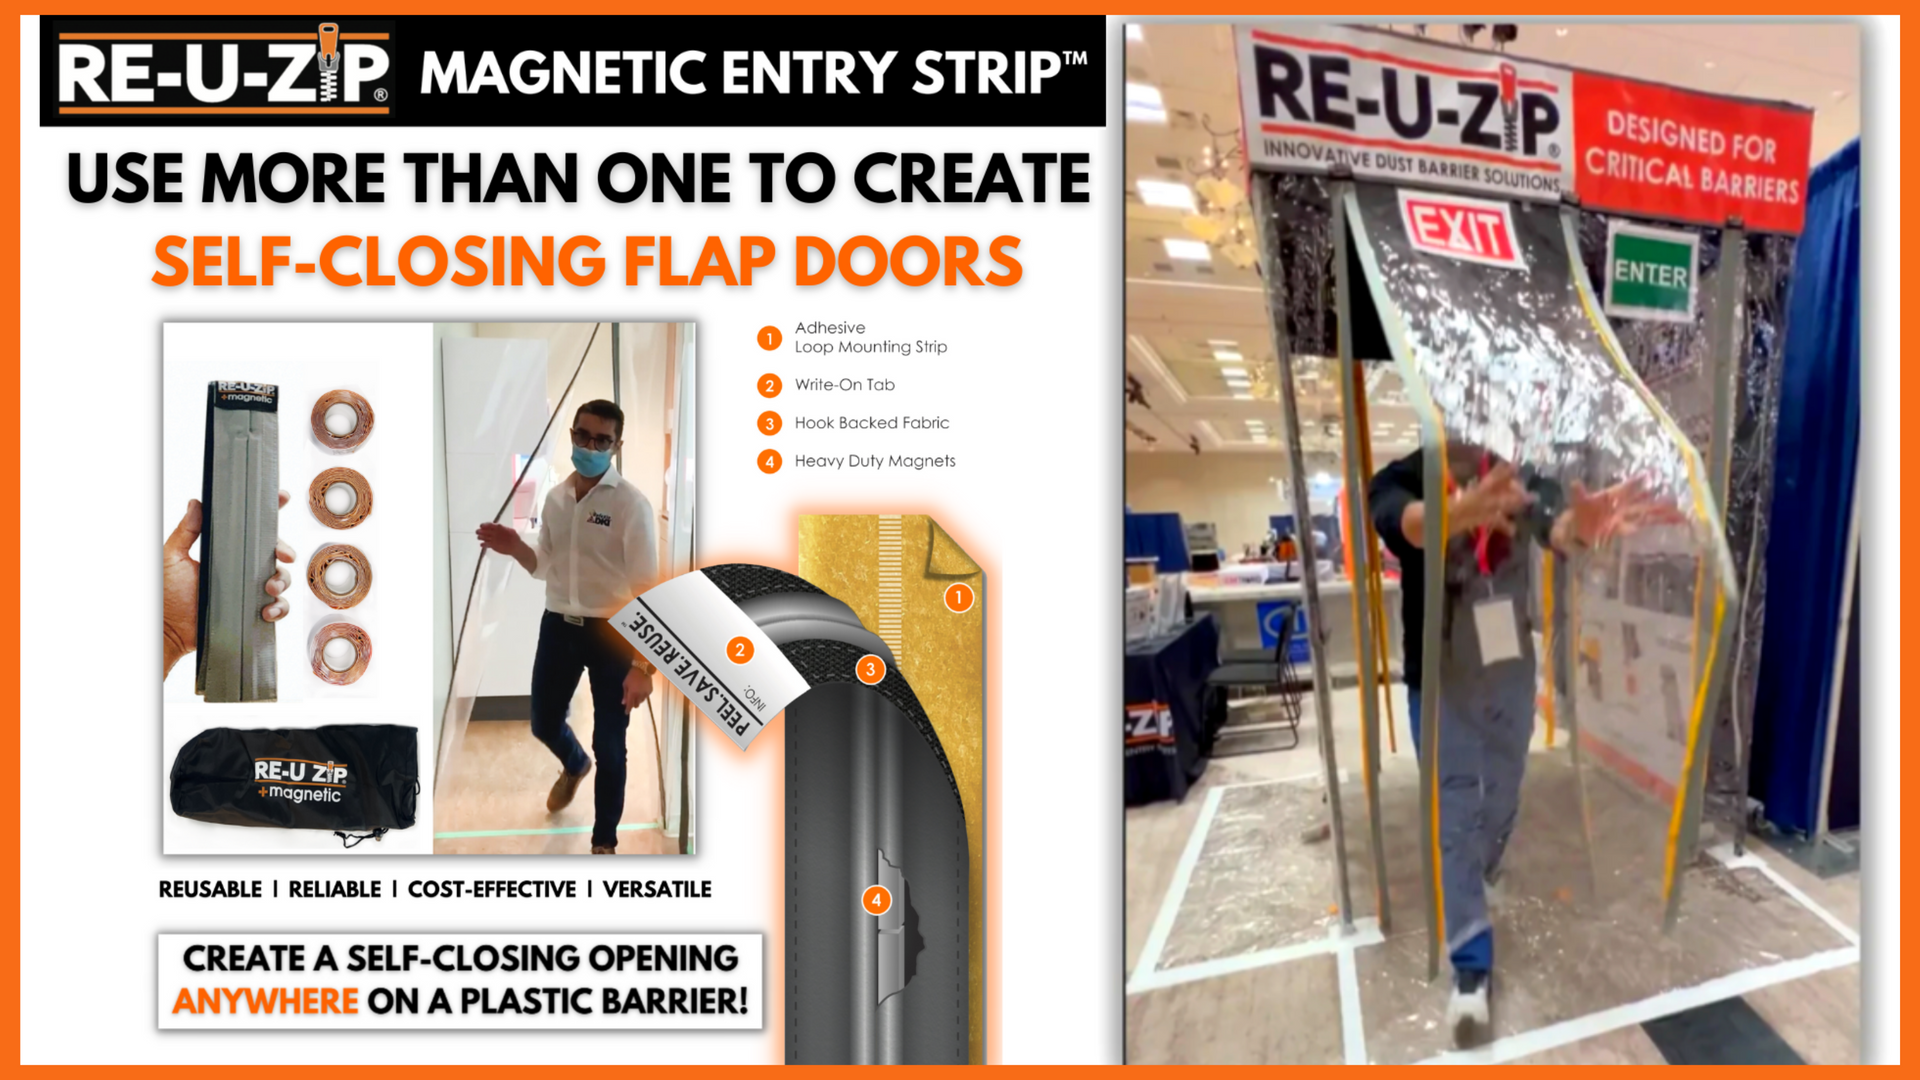 Load video: RE-U-ZIP Magnetic Double Flap Door Demo